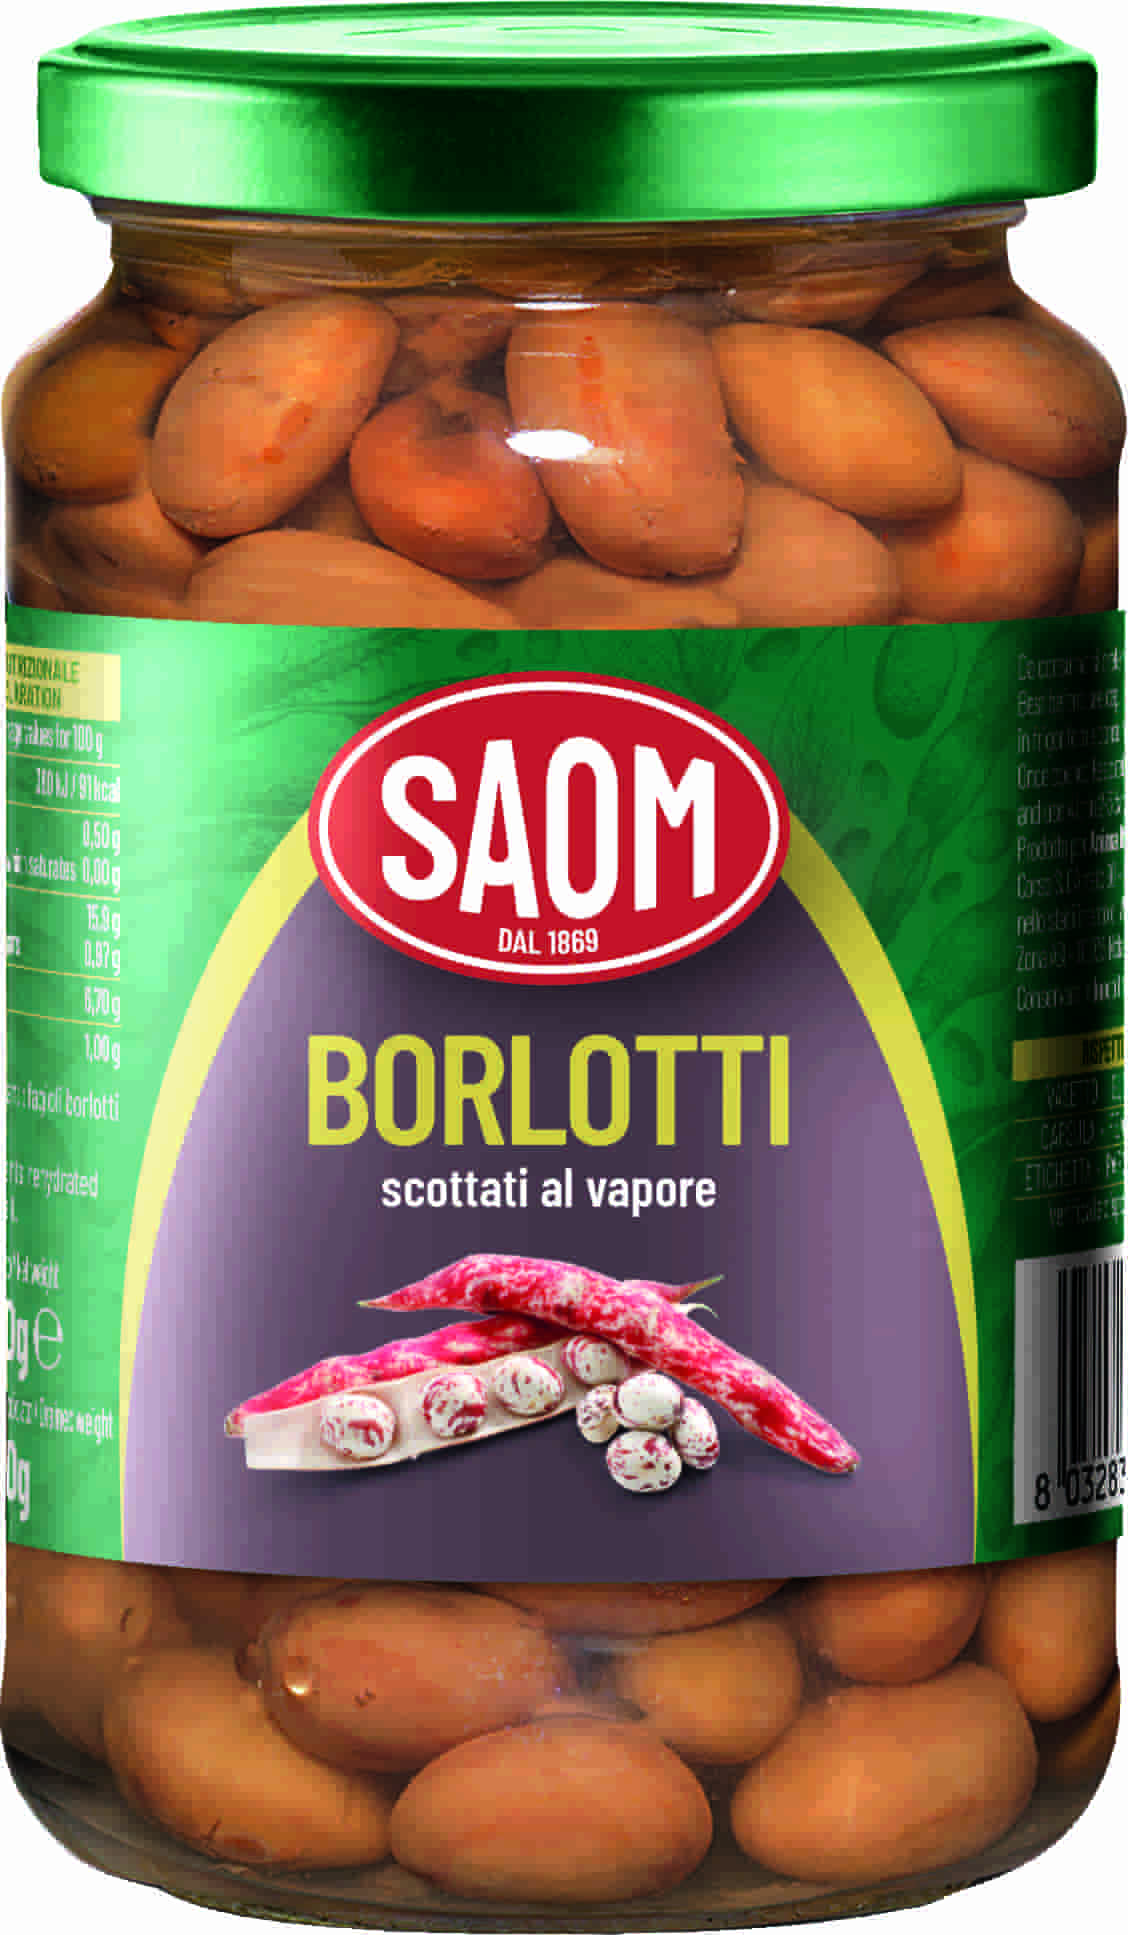 12x Saom Fagioli Borlotti Scottati al Vapore 360gr in Barattolo Vetro 12x360gr.